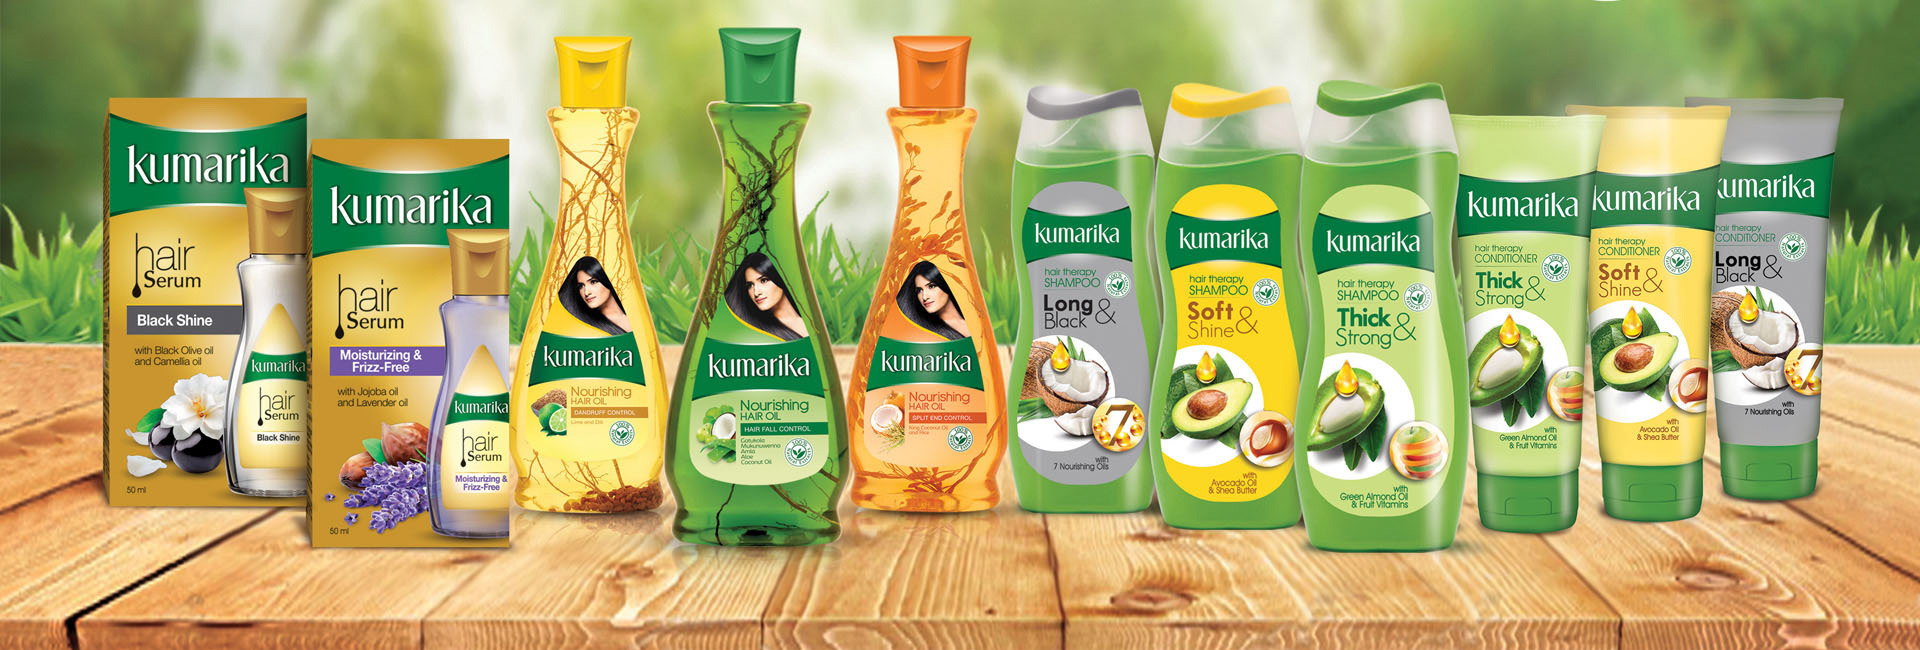 Kumarika Hair Oil | Hemas Estore | Order Online